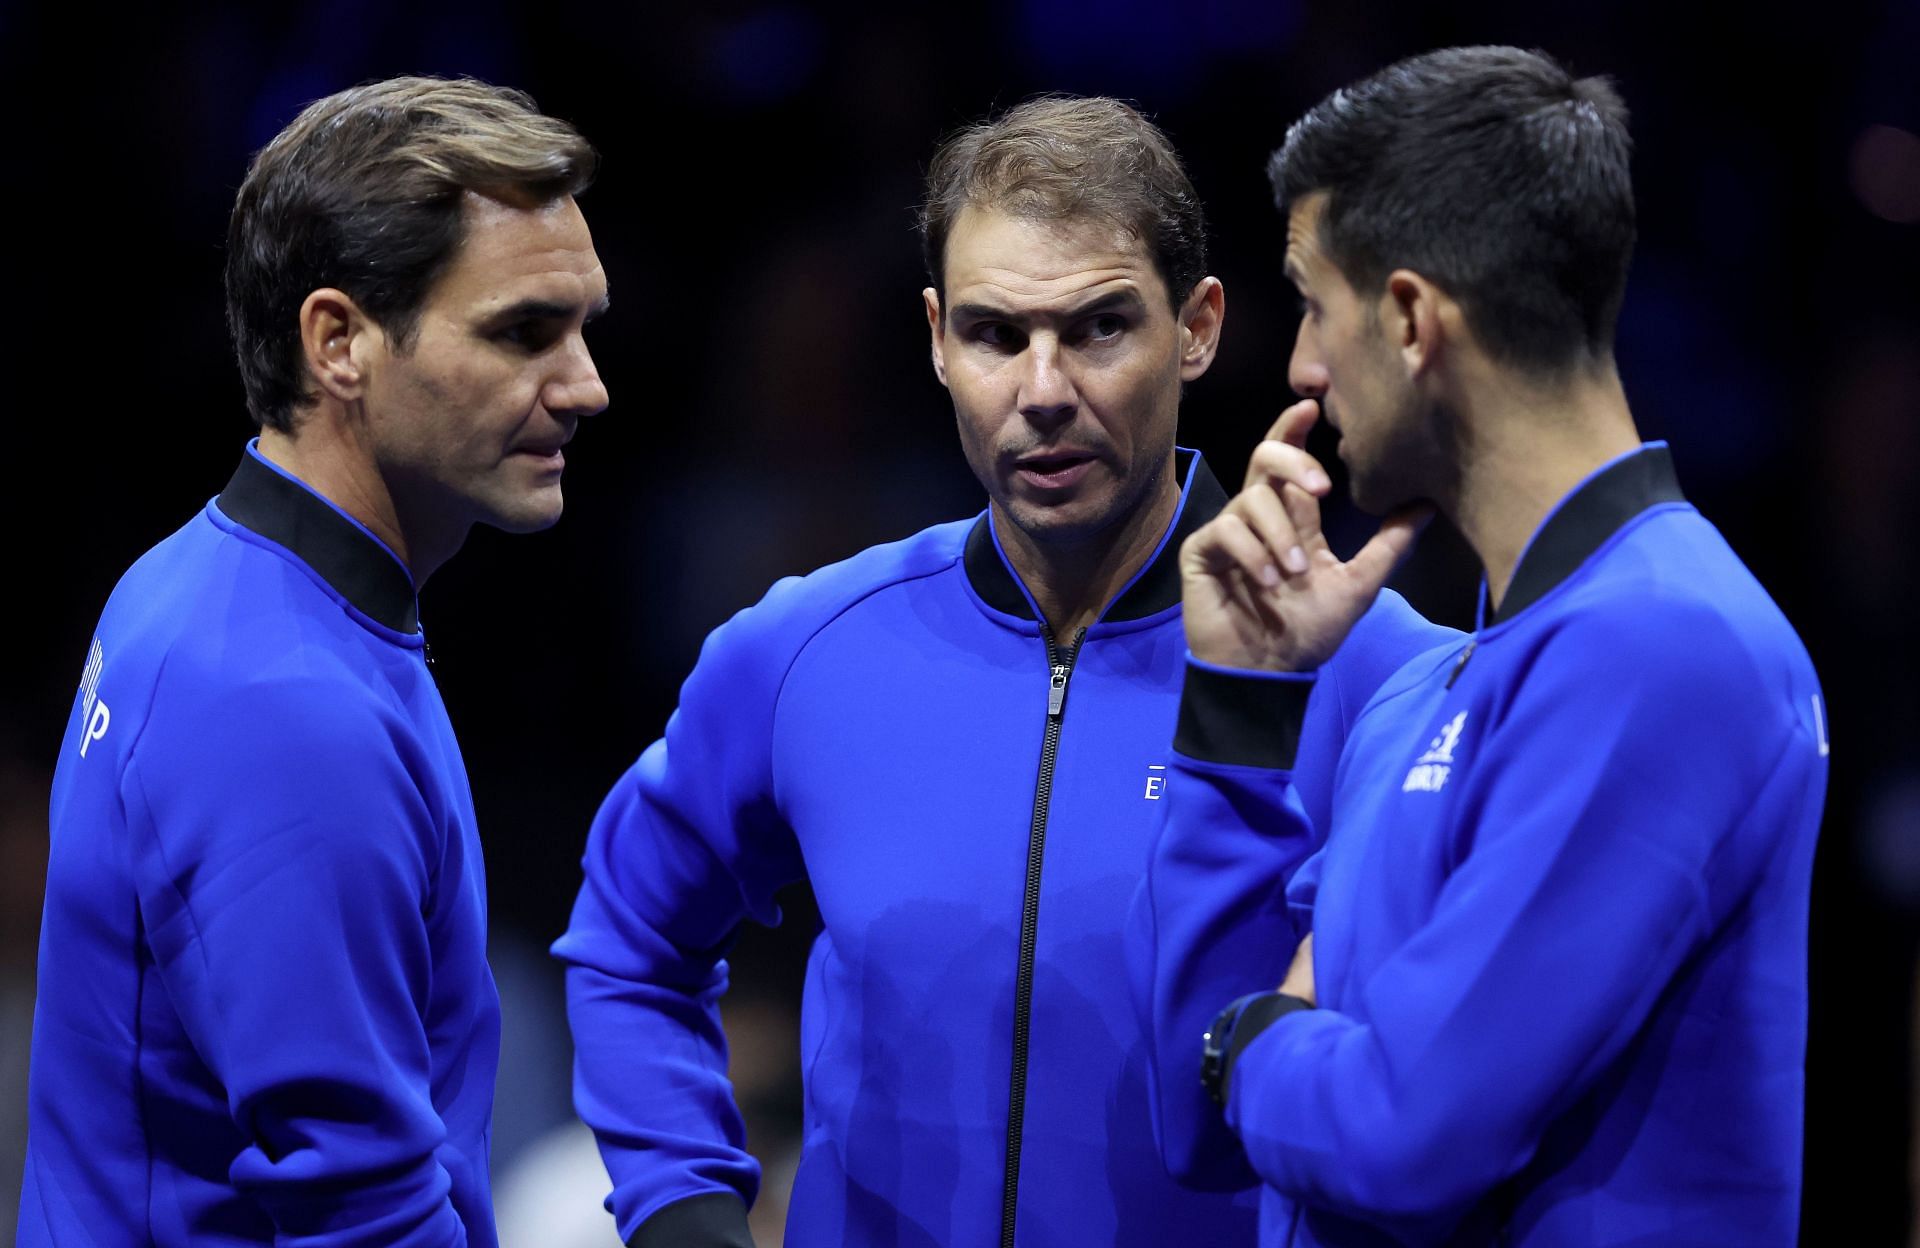 Roger Federer, Rafael Nadal and Novak Djokovic (from left to right)